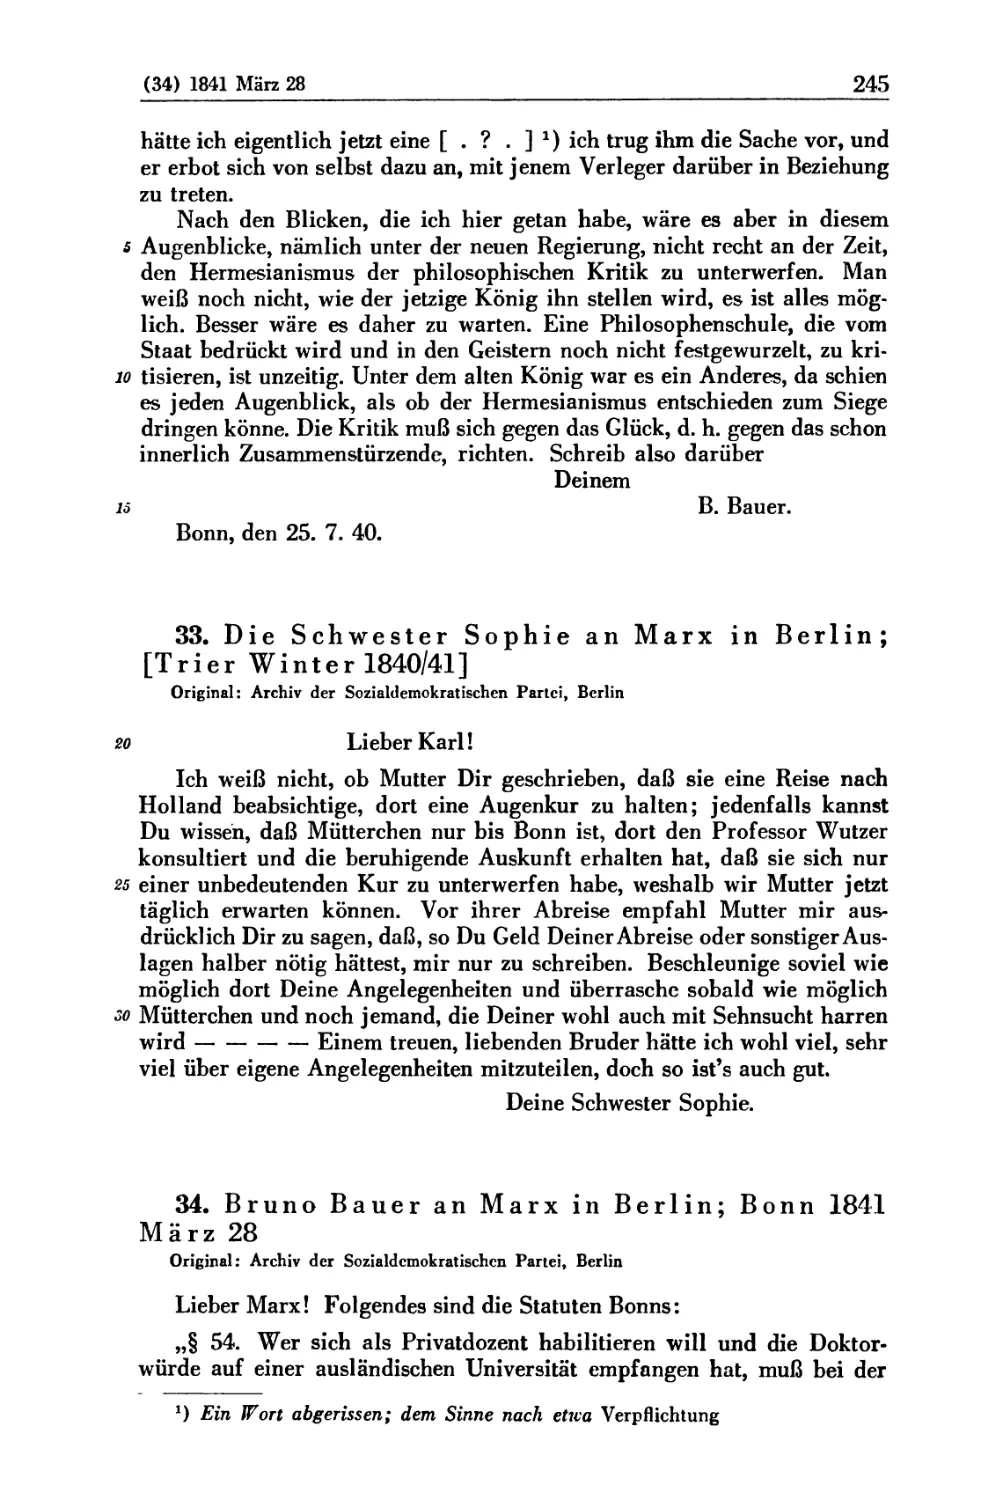 33. Die Schwester Sophie an Marx in Berlin; [Trier Winter 1840/41]
34. Bruno Bauer an Marx in Berlin; Bonn 1841 März 28